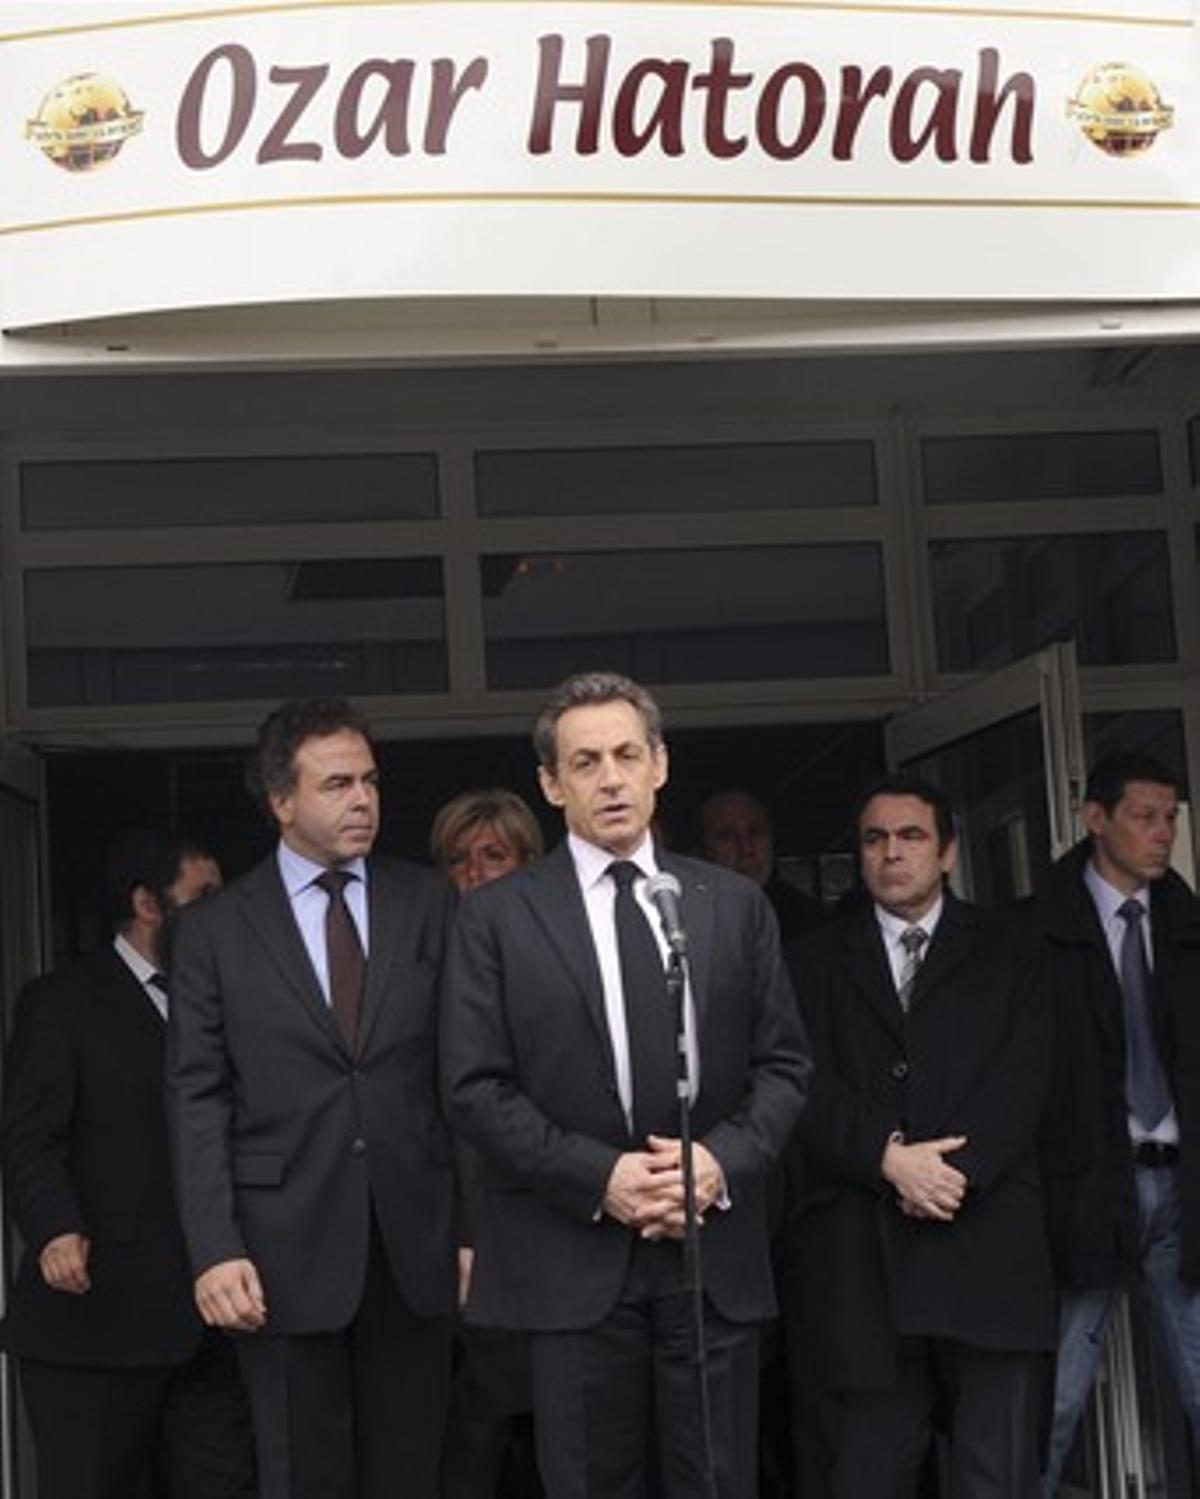 Nicolas Sarkozy pronuncia un discurs a les portes de l’escola jueva Ozar Hatorah, aquest dilluns a Tolosa.